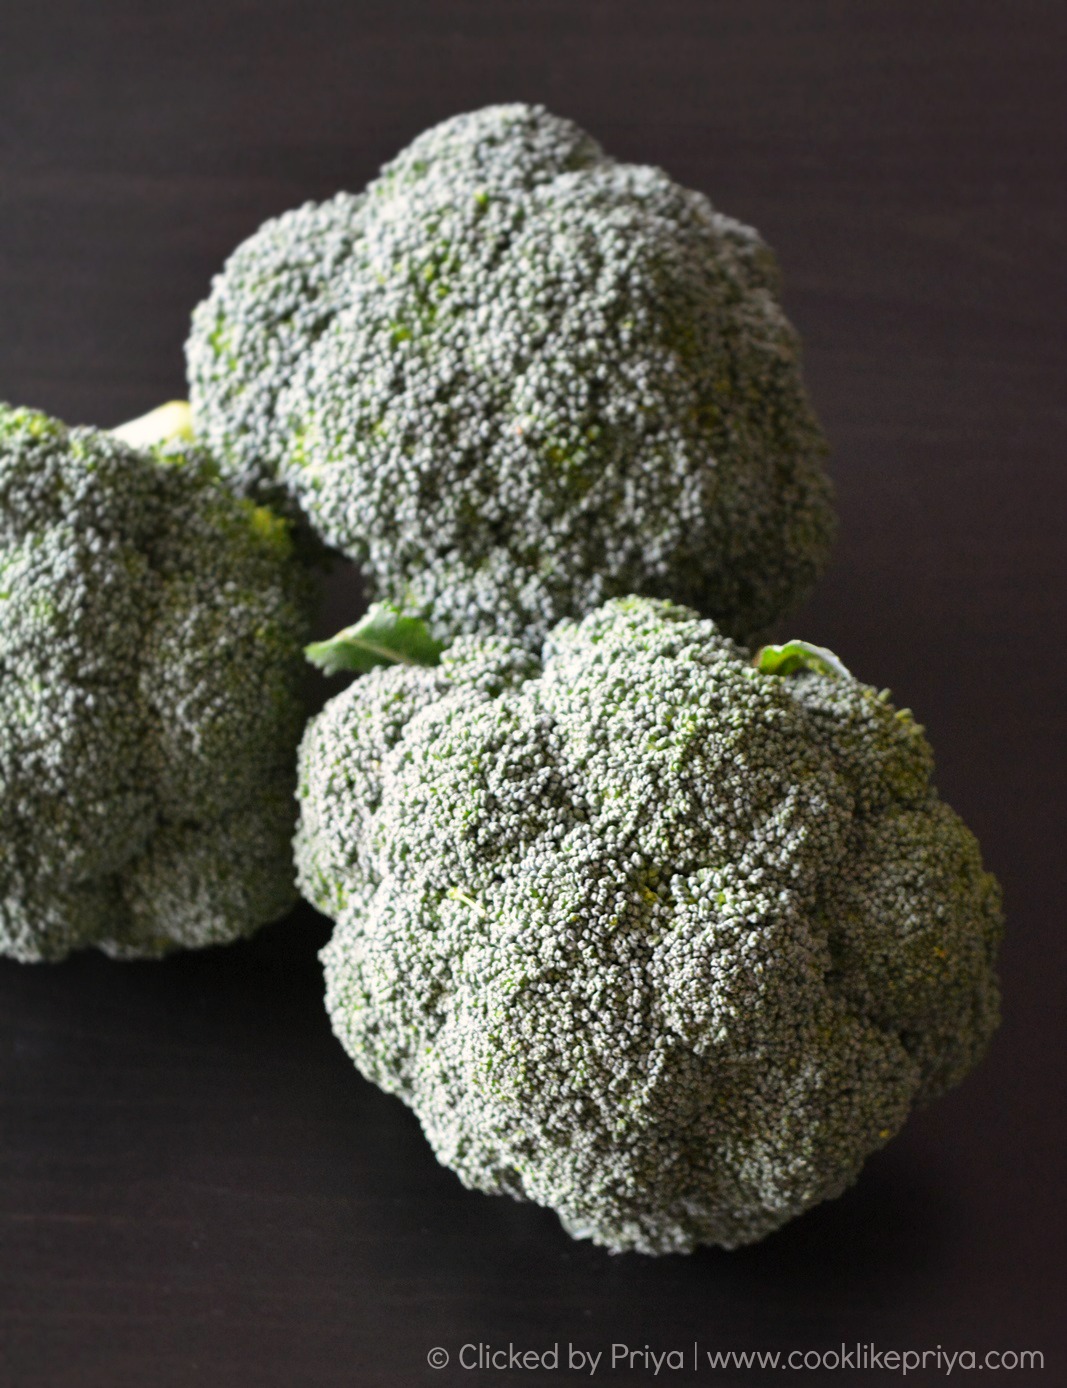 Broccoli Indian Recipes